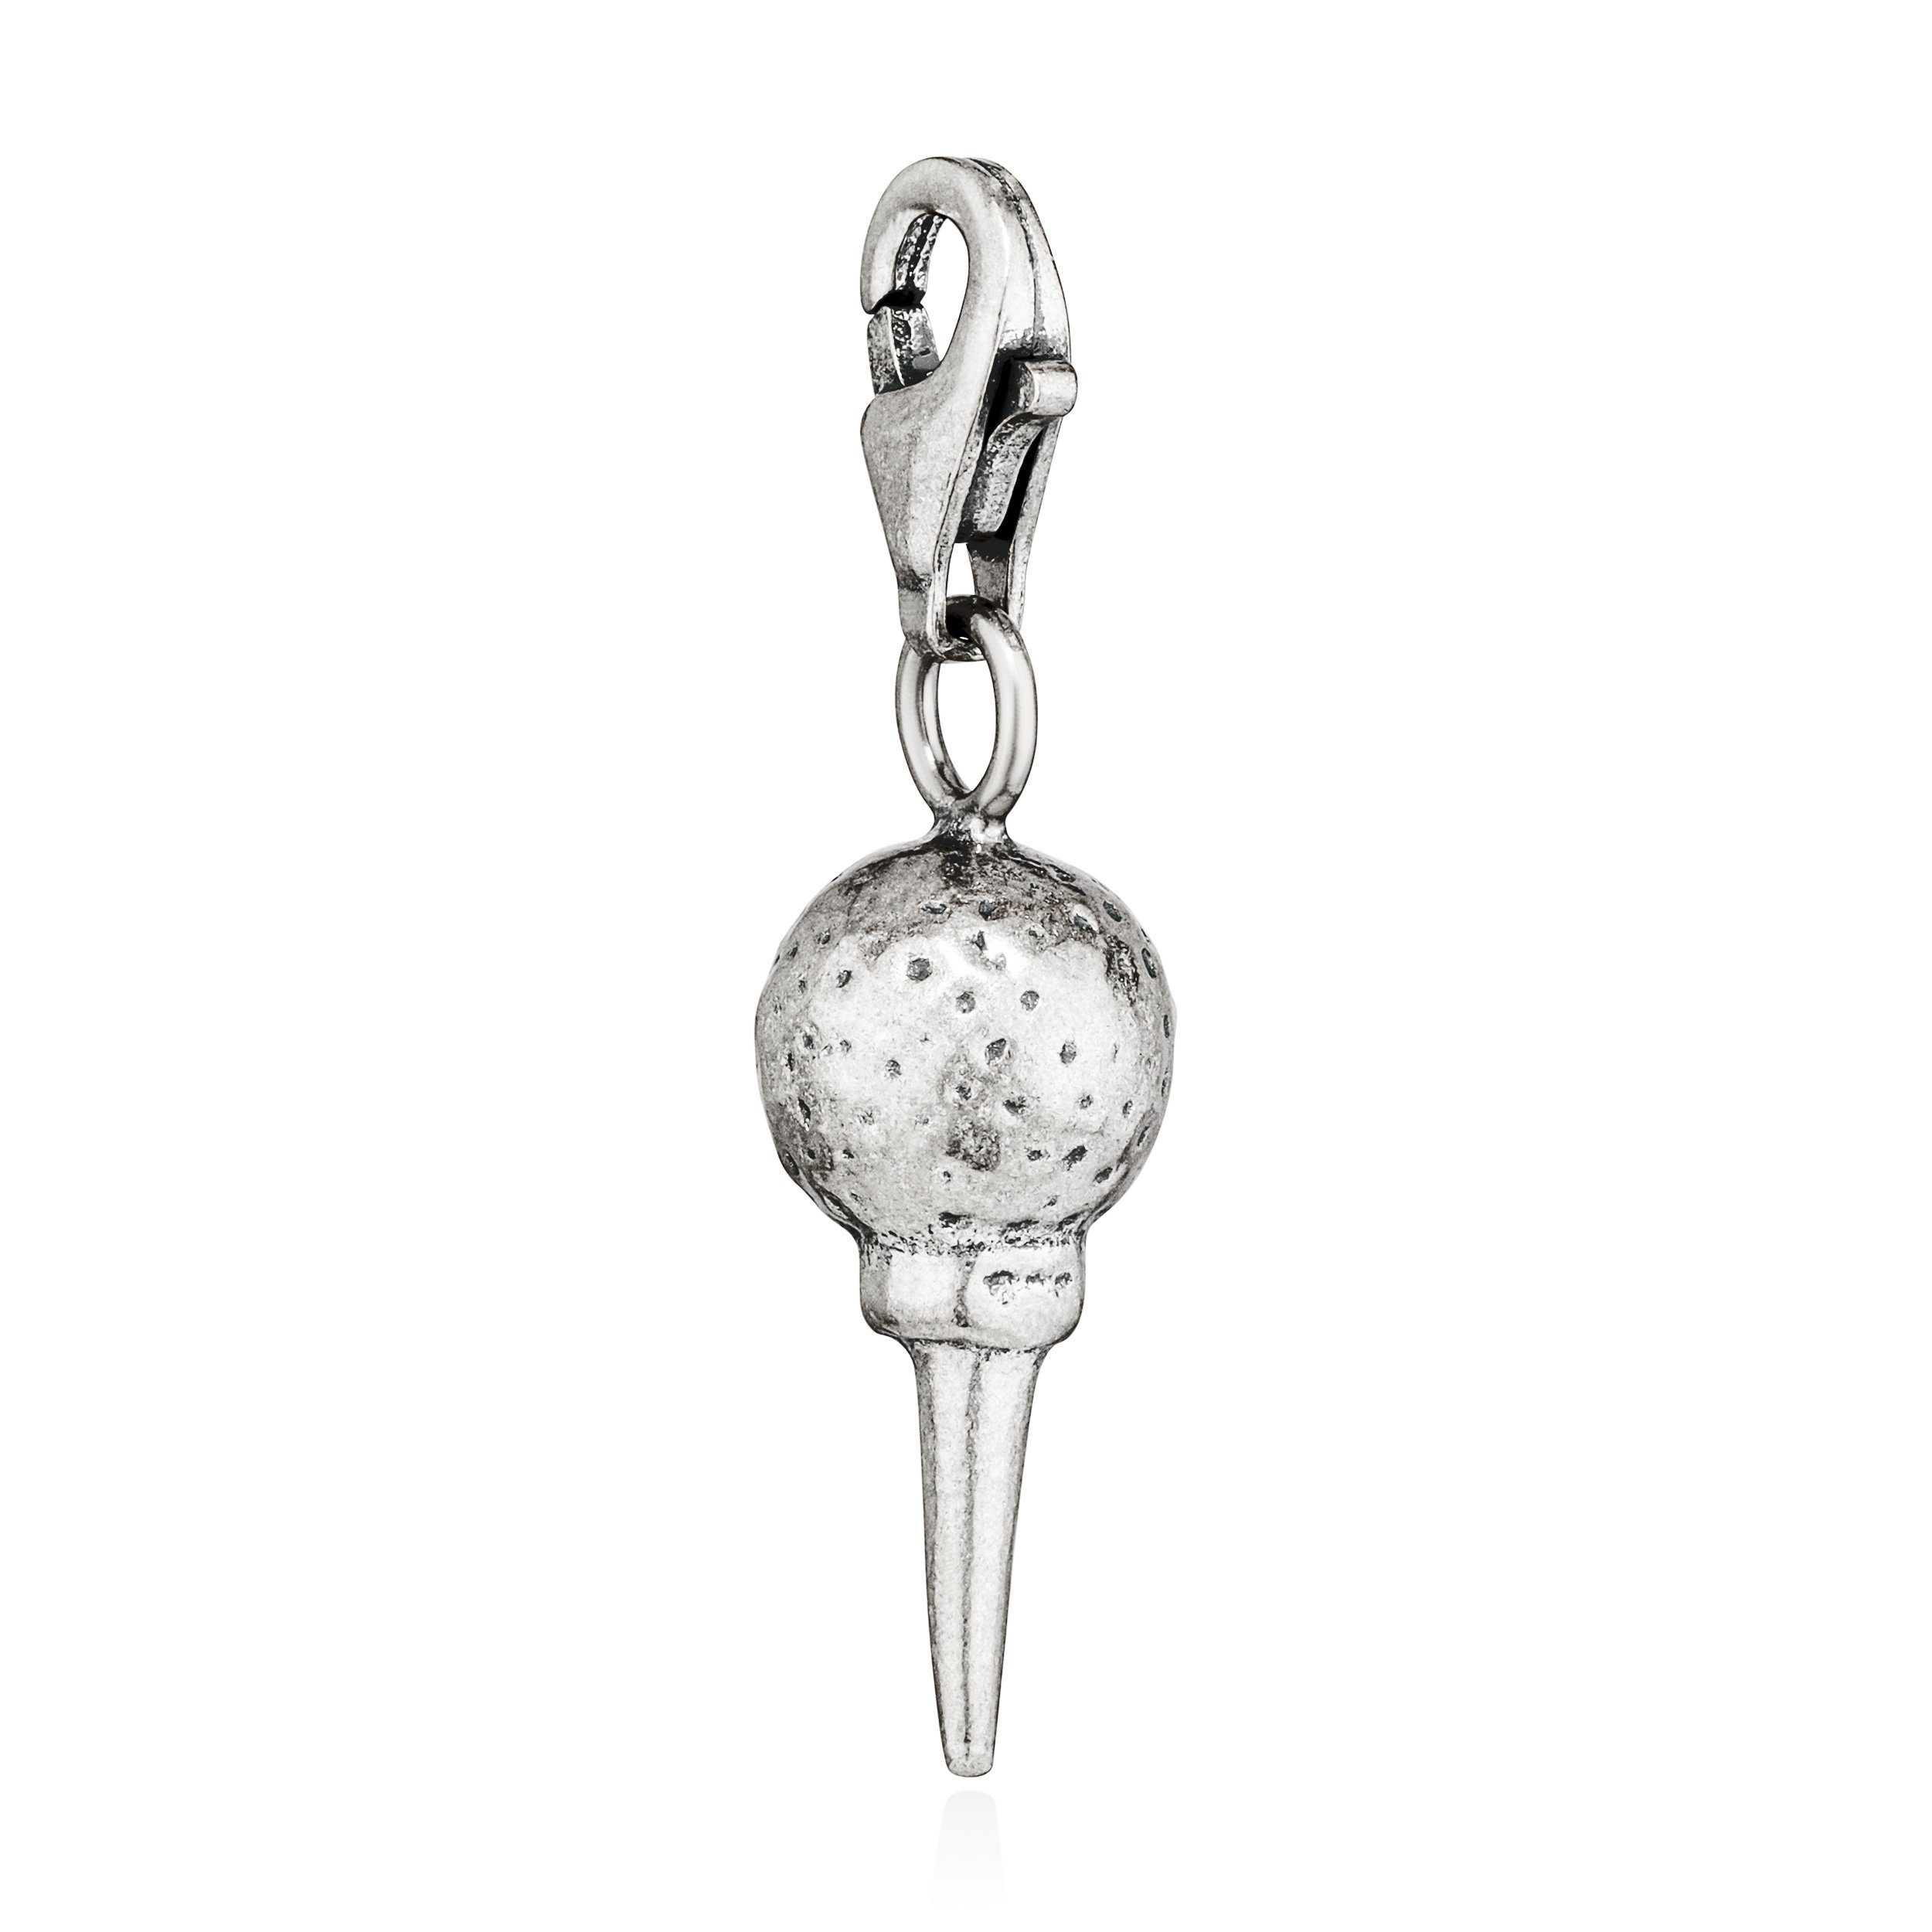 Tali 925 17x8mm Eistüte Kettenanhänger mit Amulett Kugeln Charm-Anhänger Silber antik NKlaus